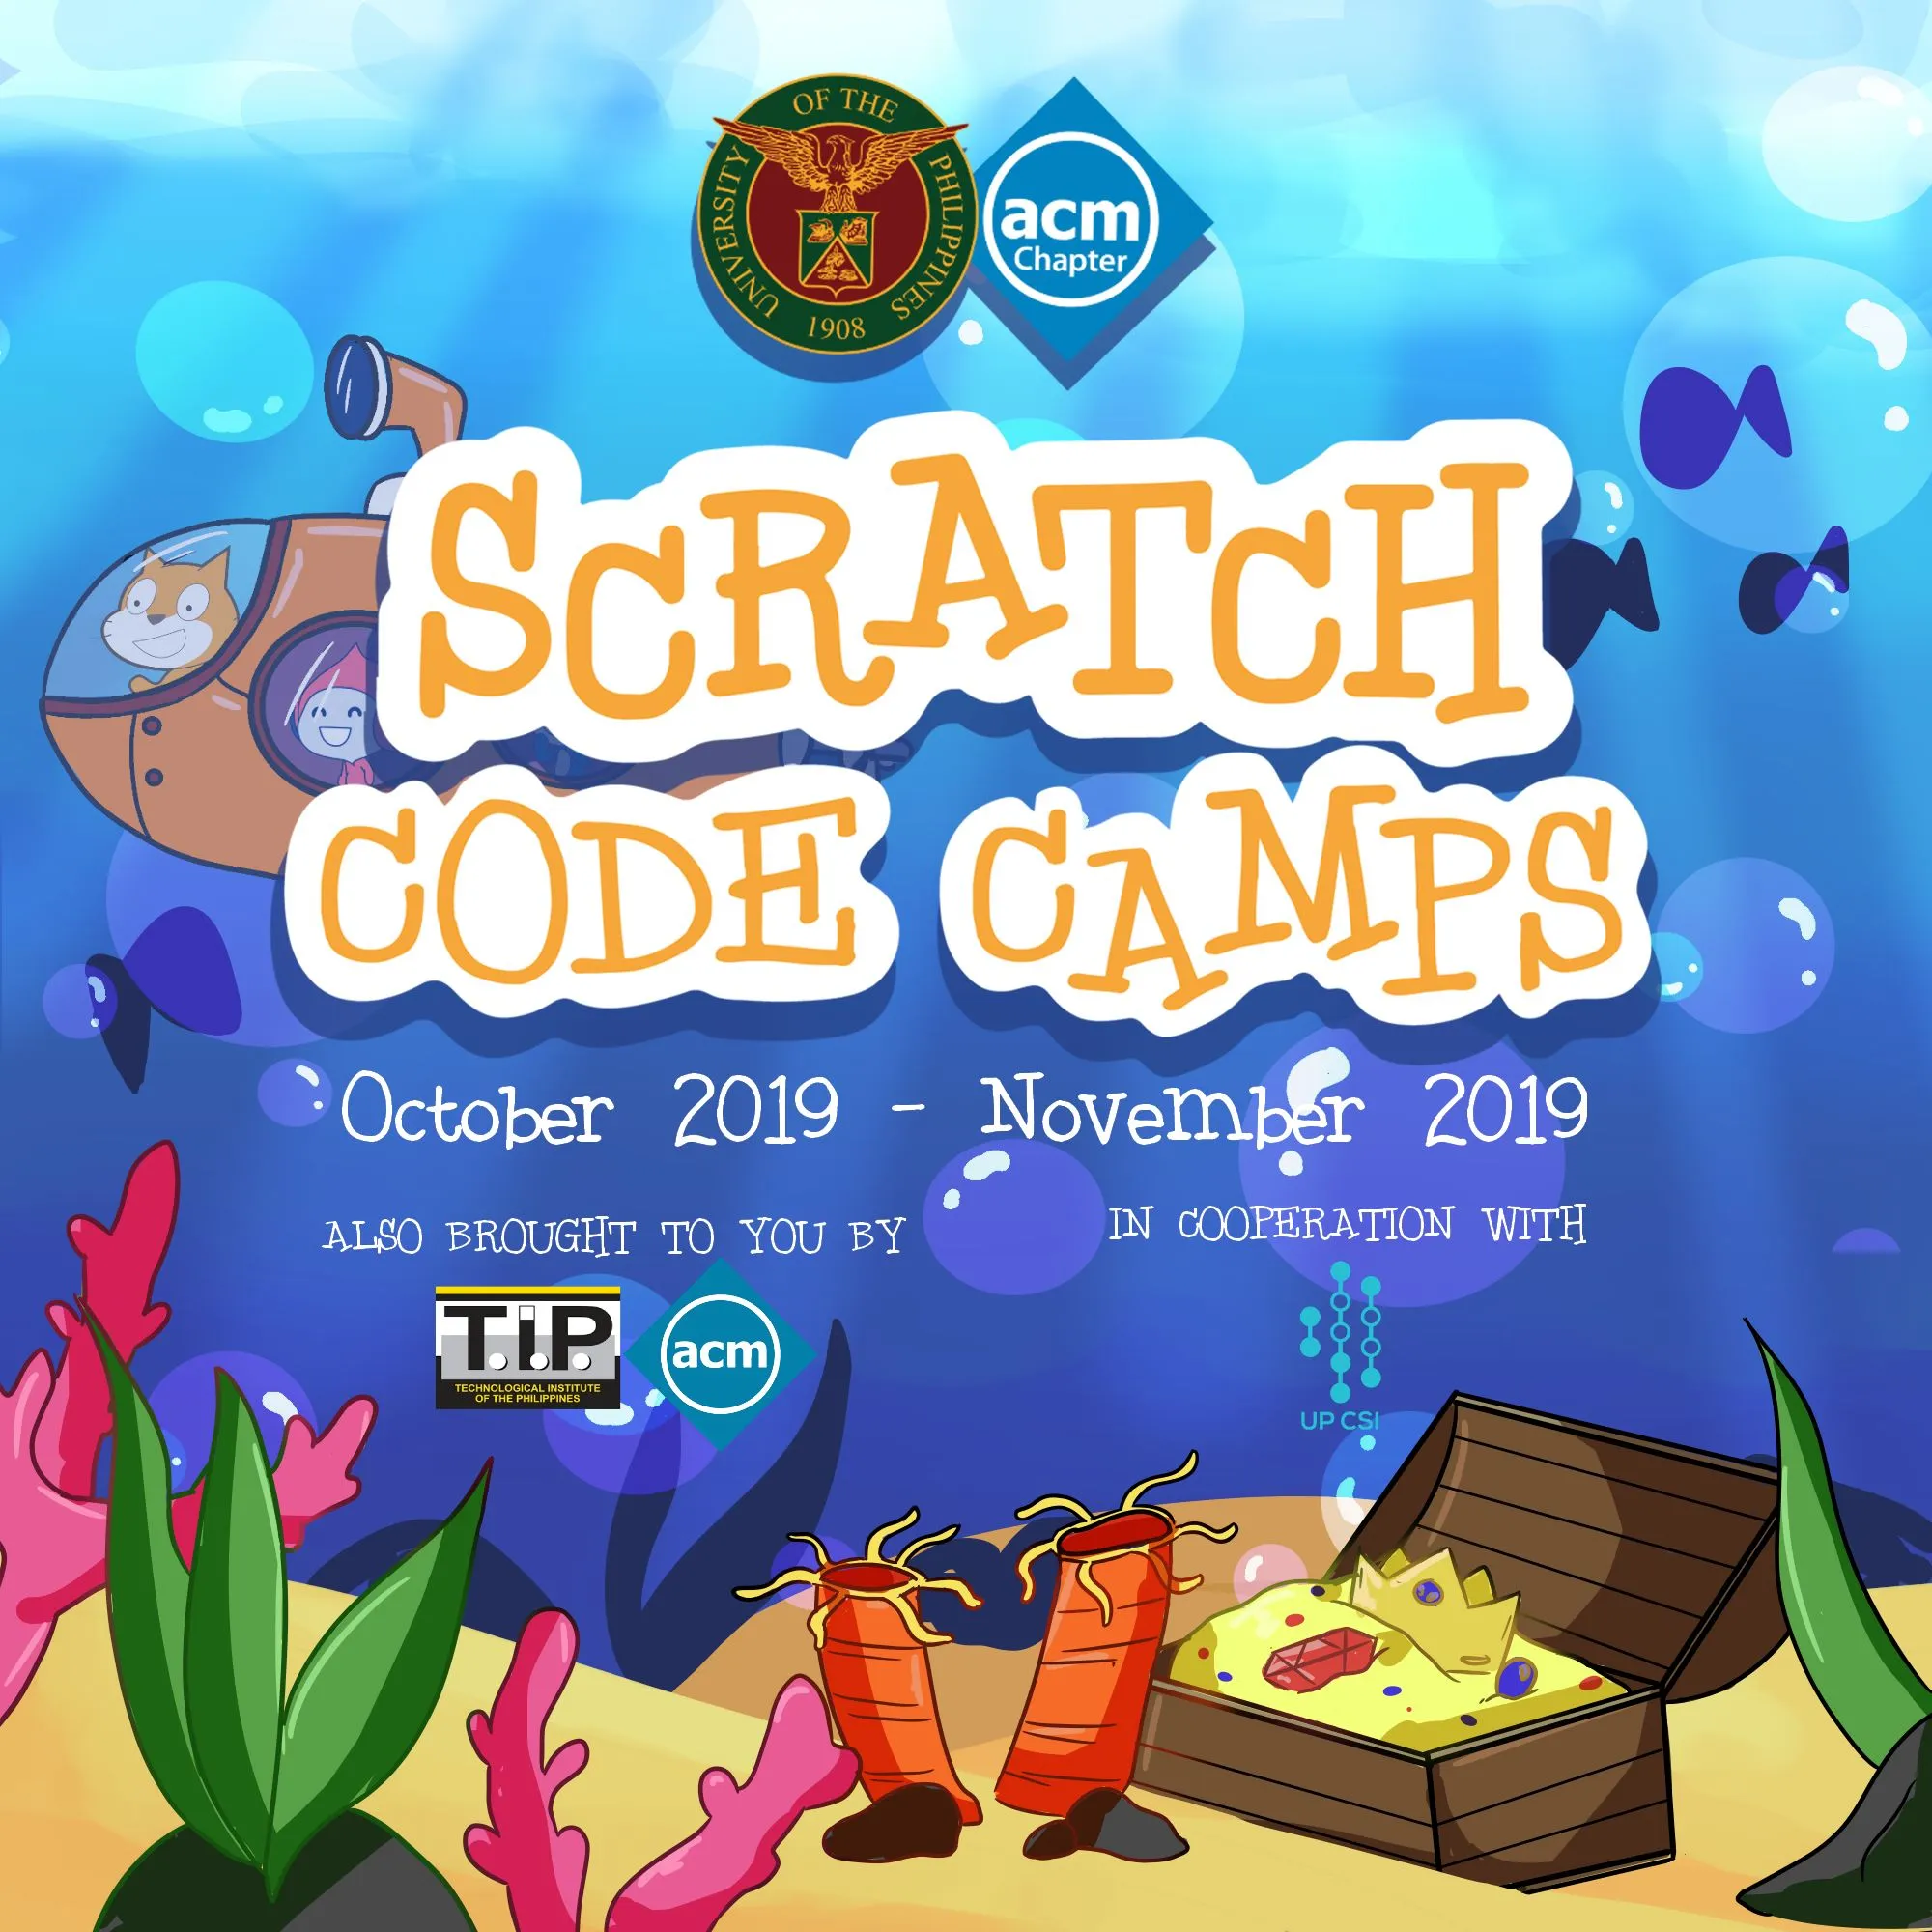 Scratch Code Camp